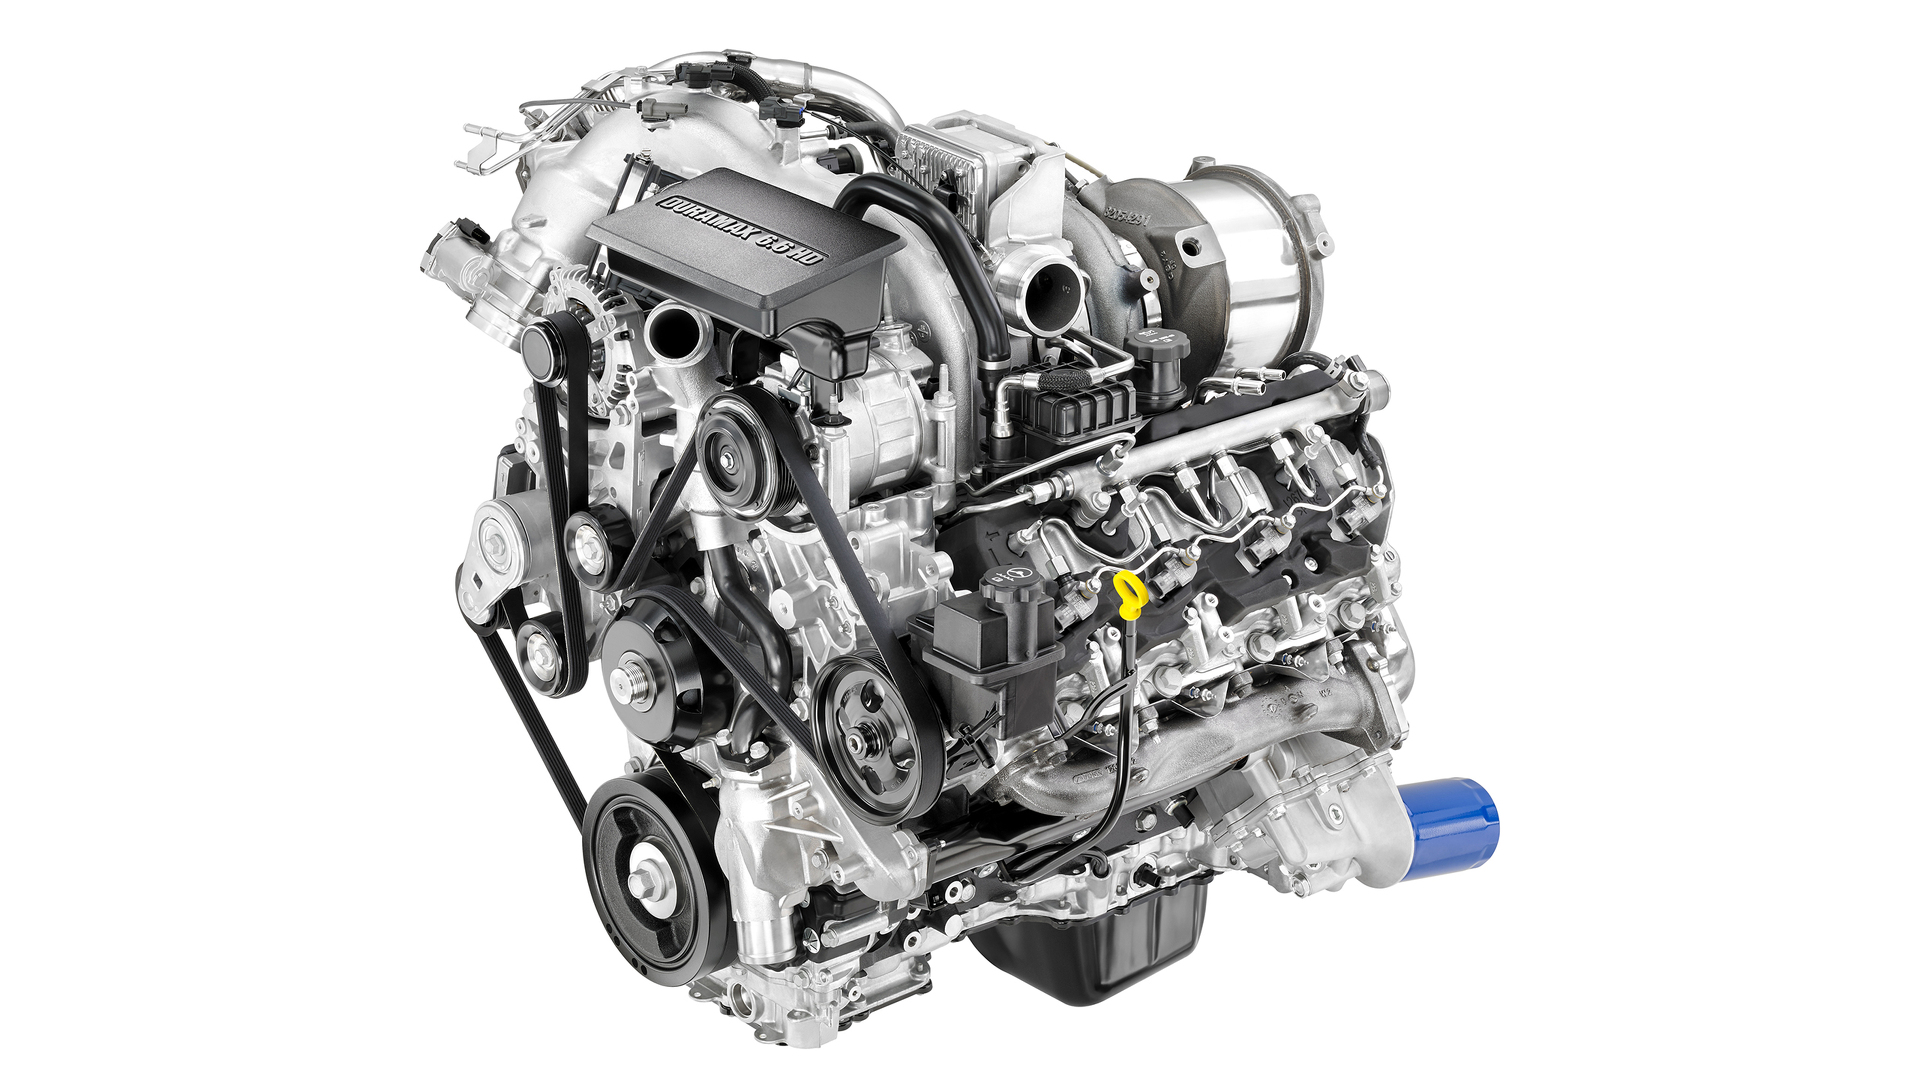 Duramax 6.6L turbo diesel